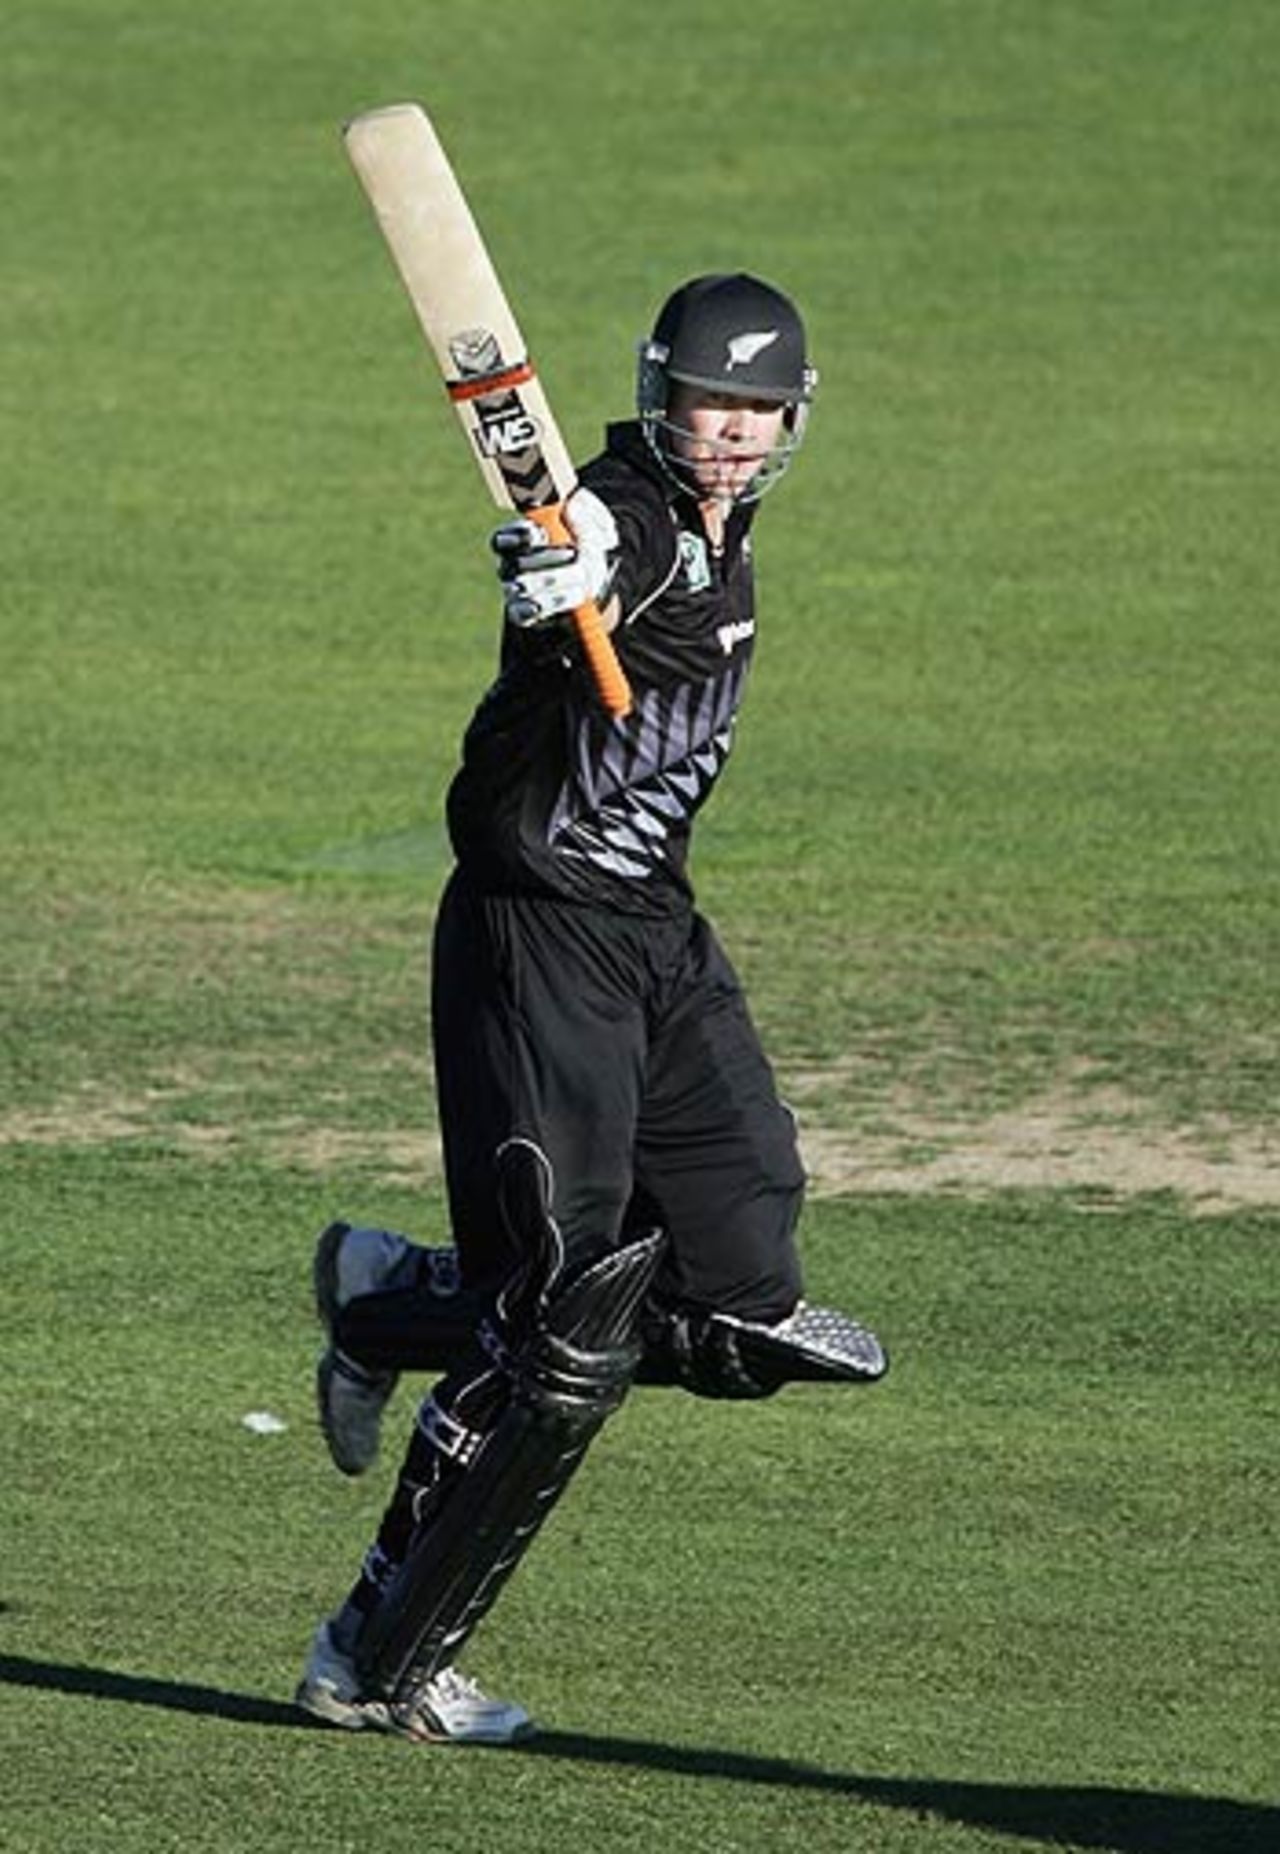 Peter Fulton celebrates his maiden hundred in the final ODI at Napier, New Zealand v Sri Lanka, 5h ODI, Napier, January 8, 2006